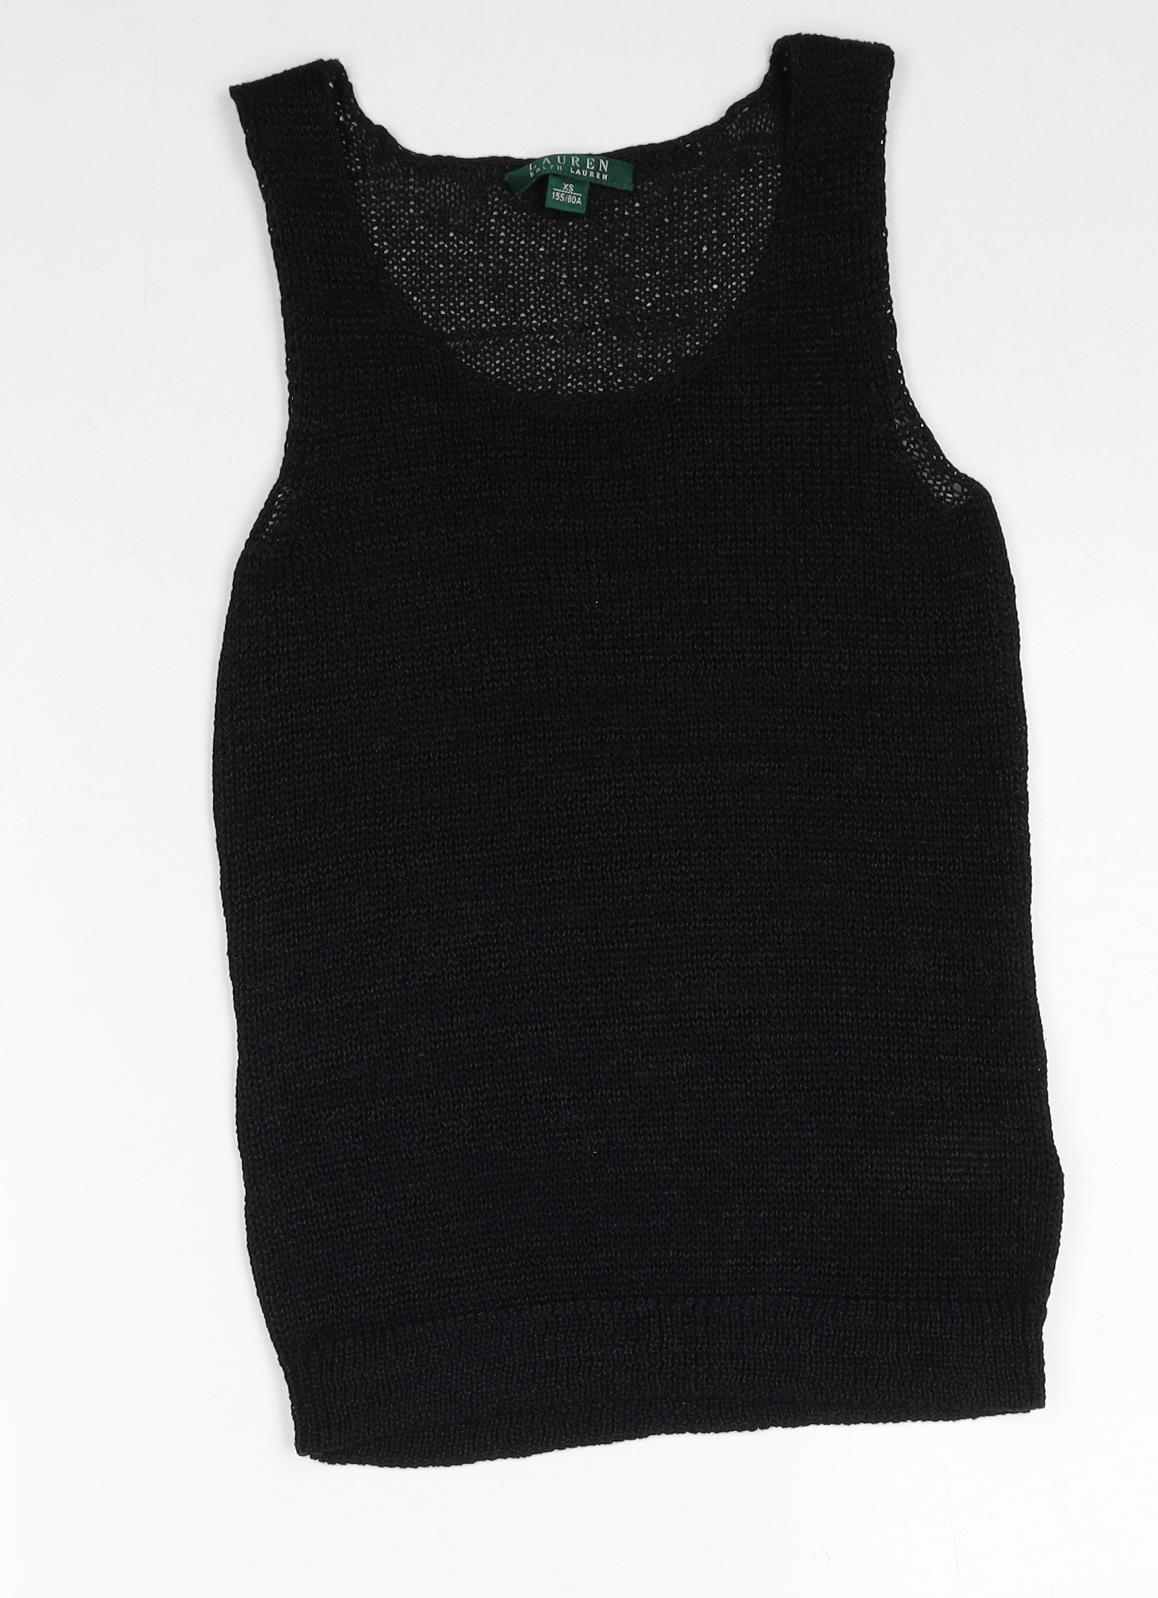 Lauren Ralph Lauren Womens Black Cotton Basic Tank Size XS Scoop Neck